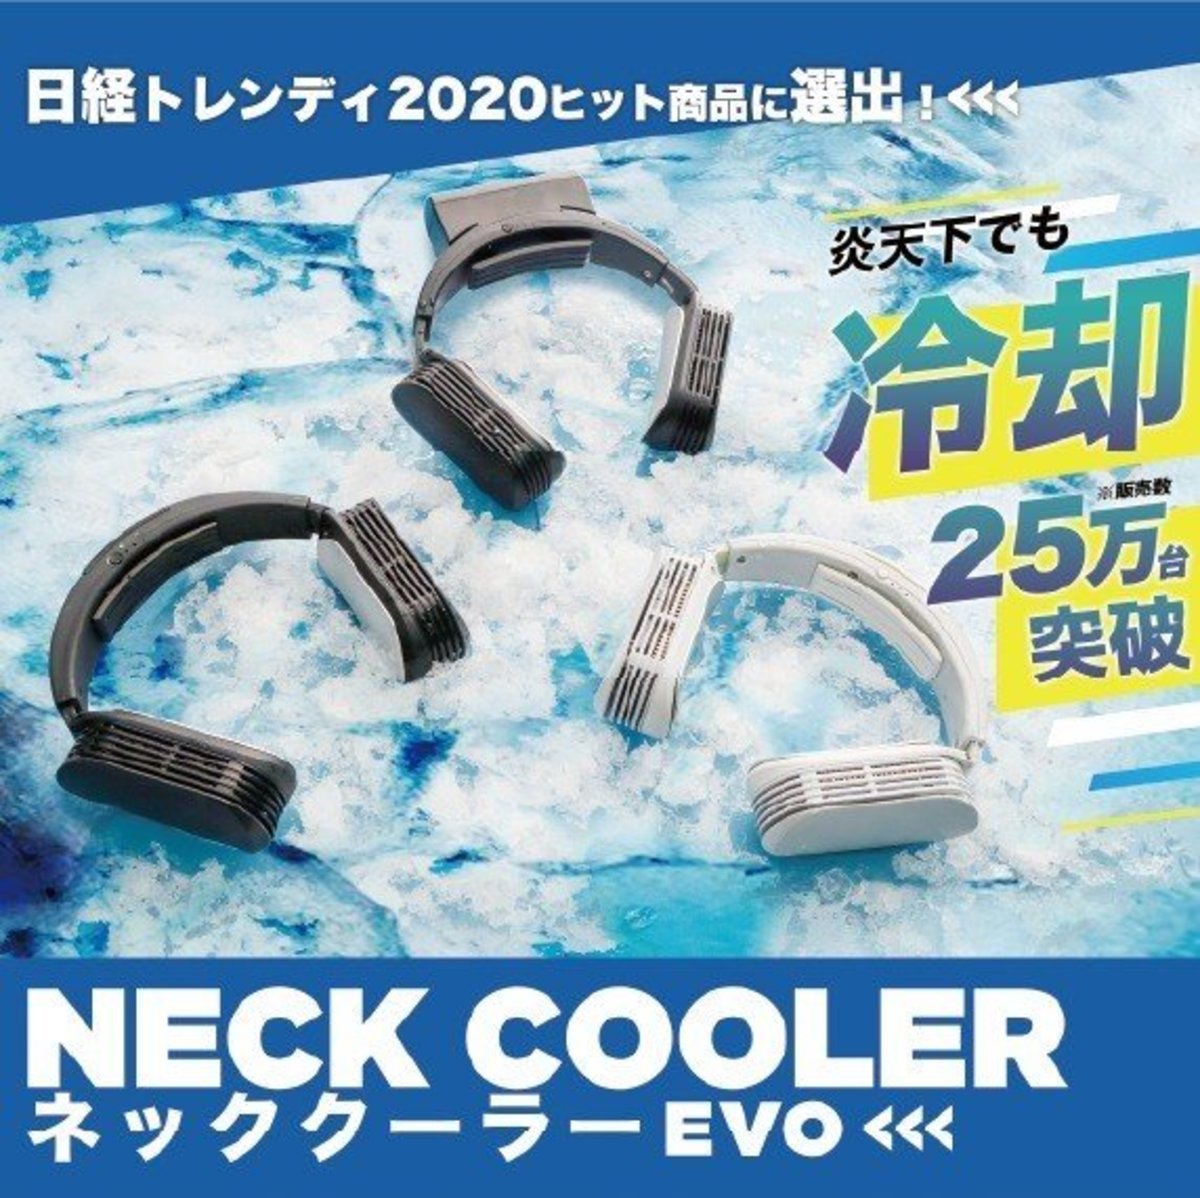 Thanko - Evolved Neck cooler EVO wireless neck cooler - White [Hong Kong licensed]